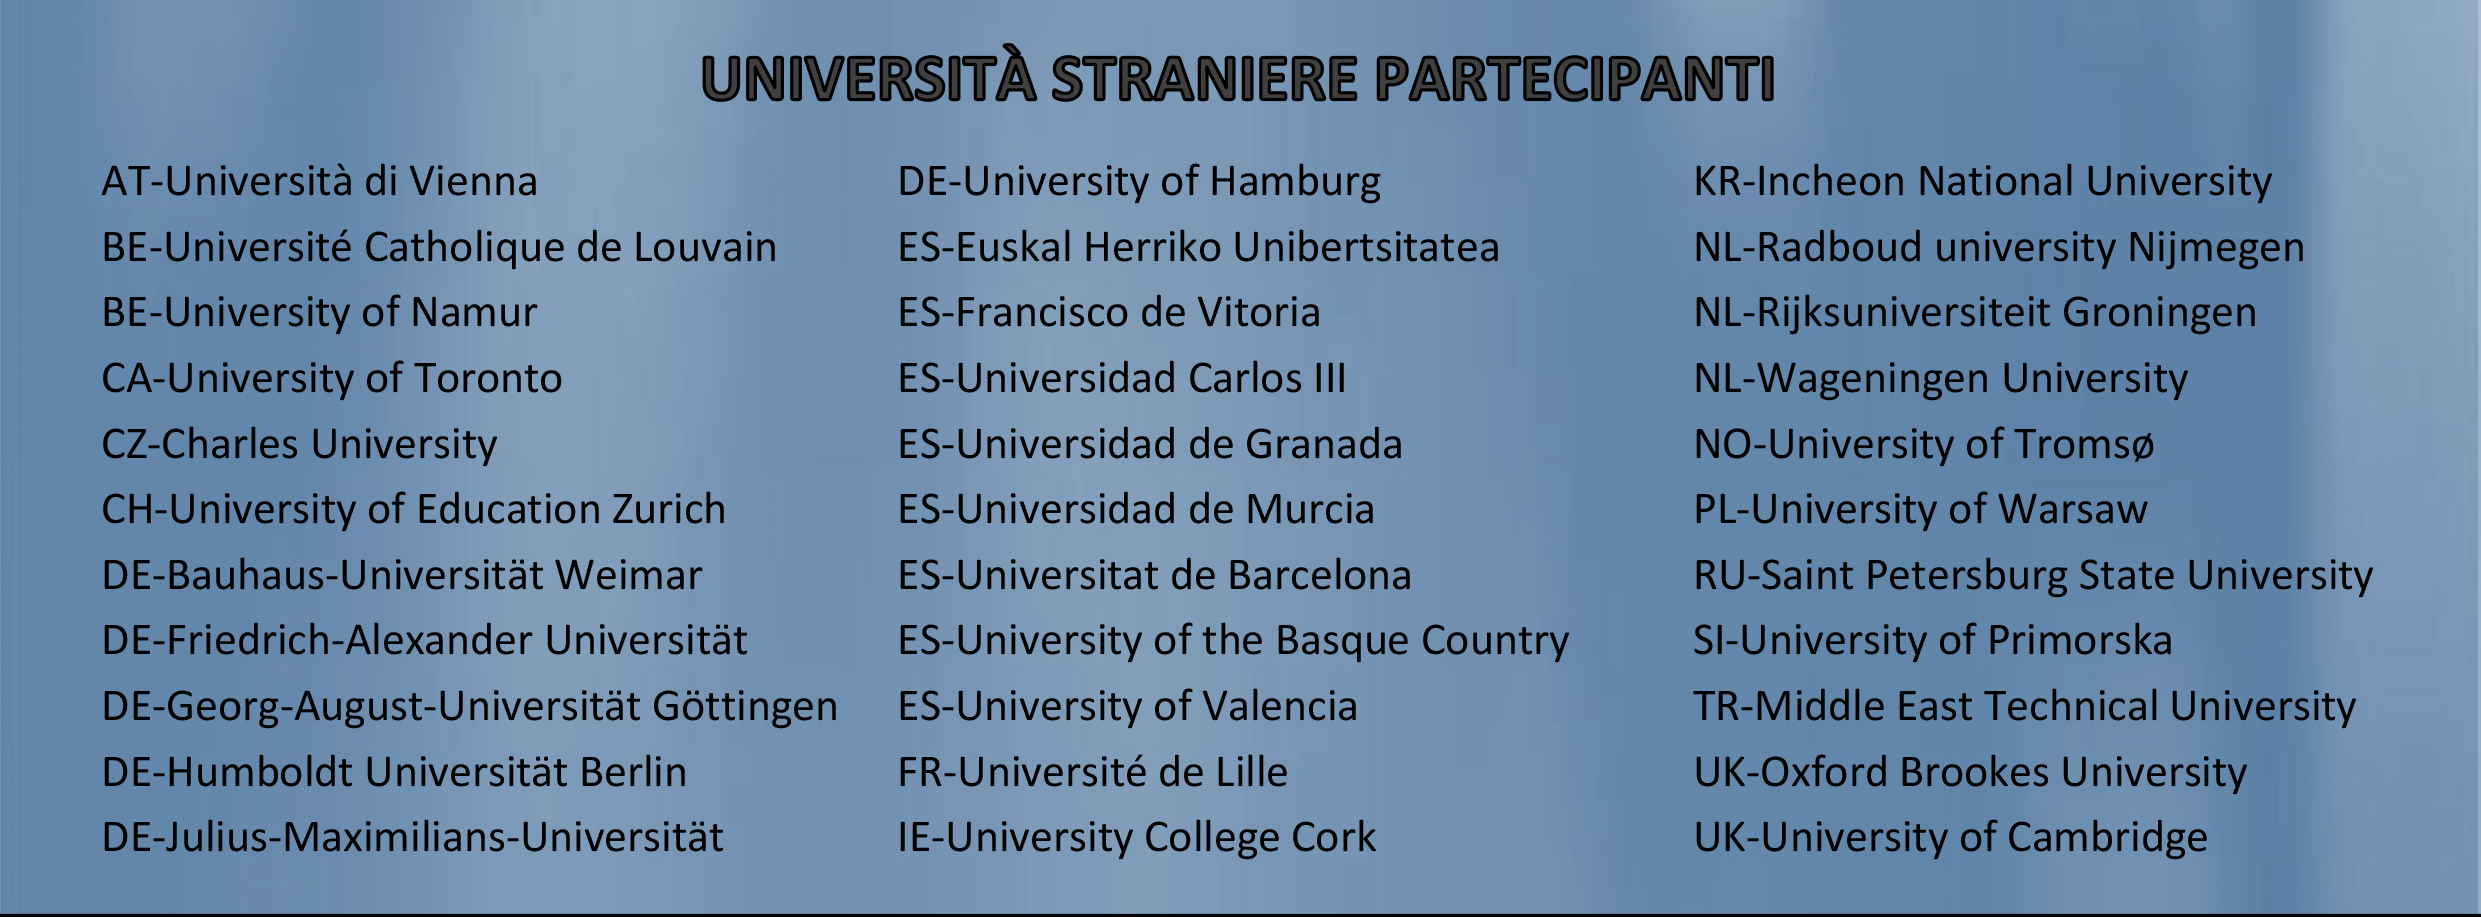 Università partecipanti